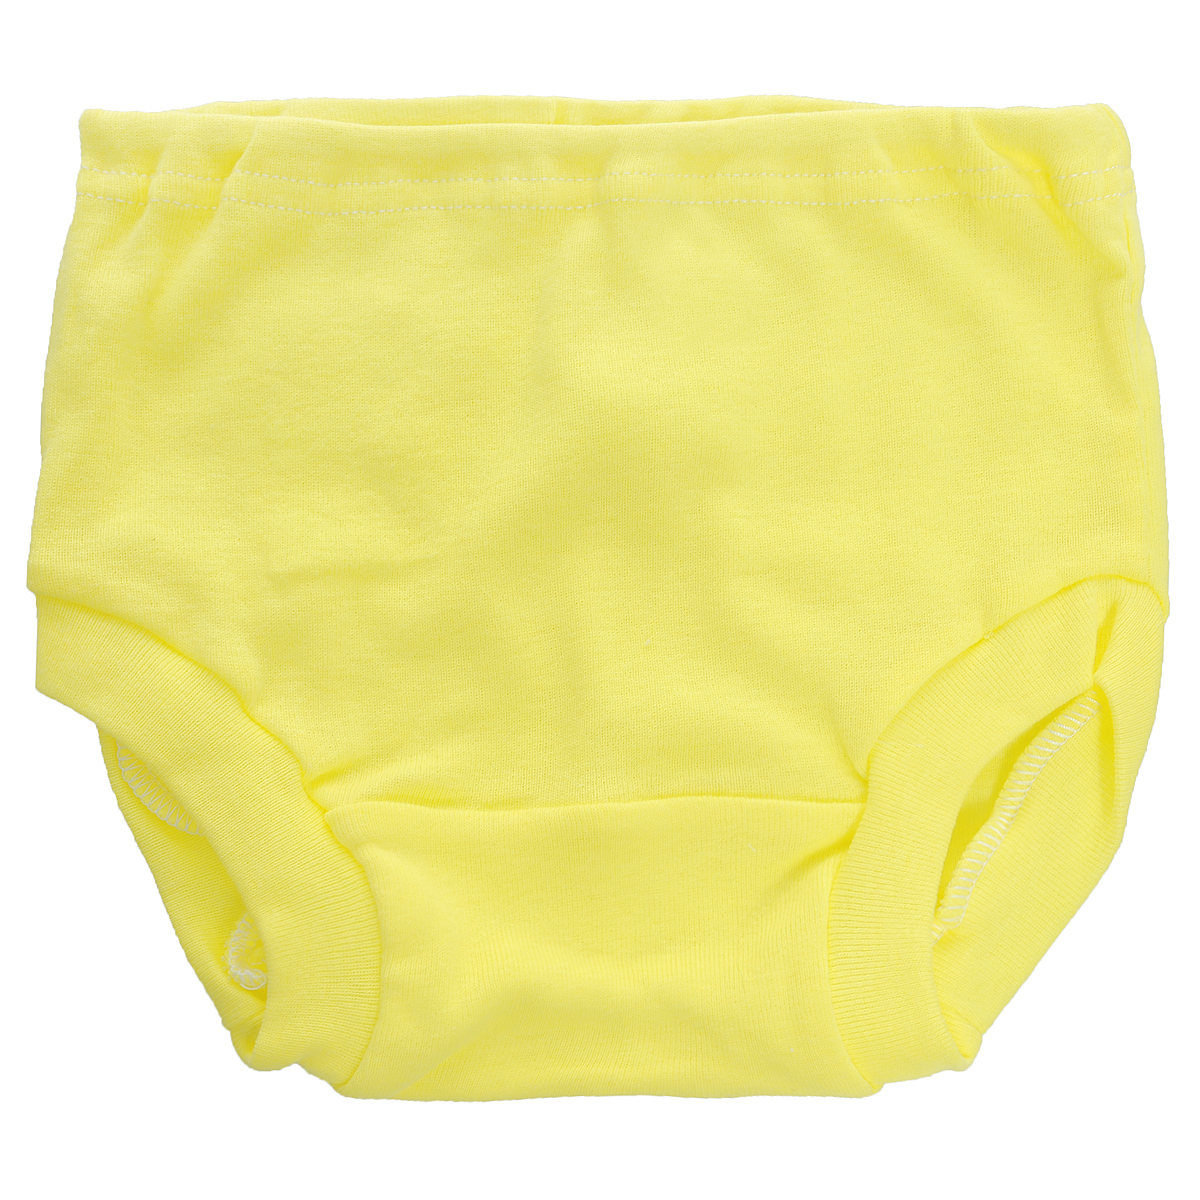 Трусы детские Трон-плюс, цвет: желтый. 8220. Размер 86, 18 месяцев